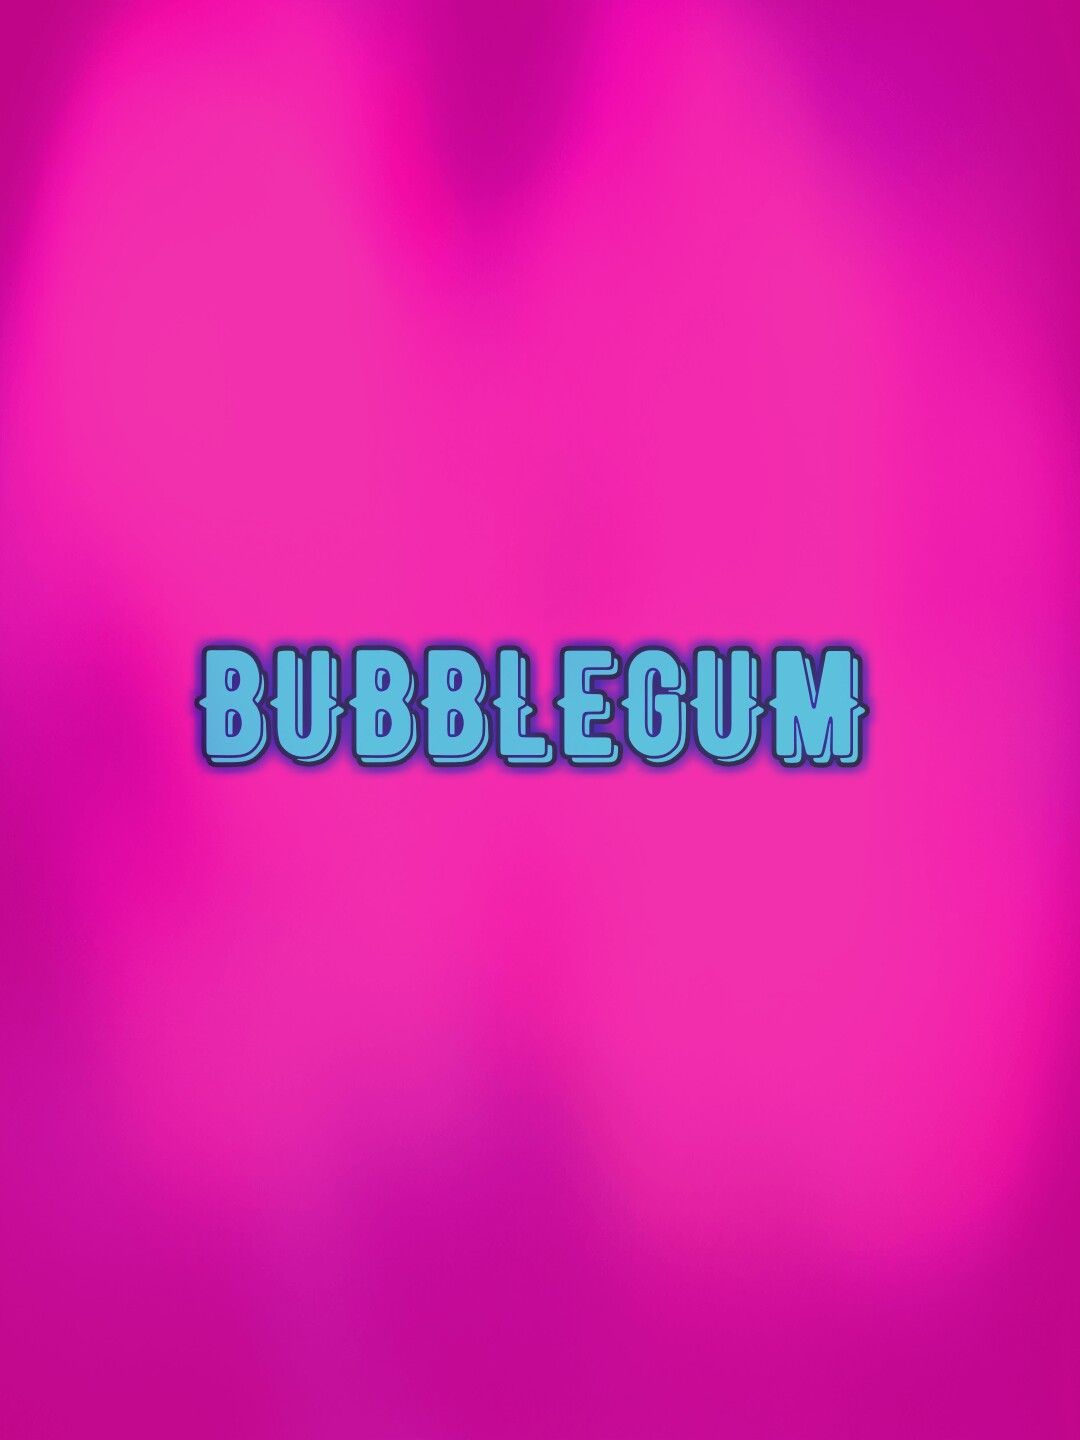 Bubble Gum Wallpaper Free Bubble Gum Background